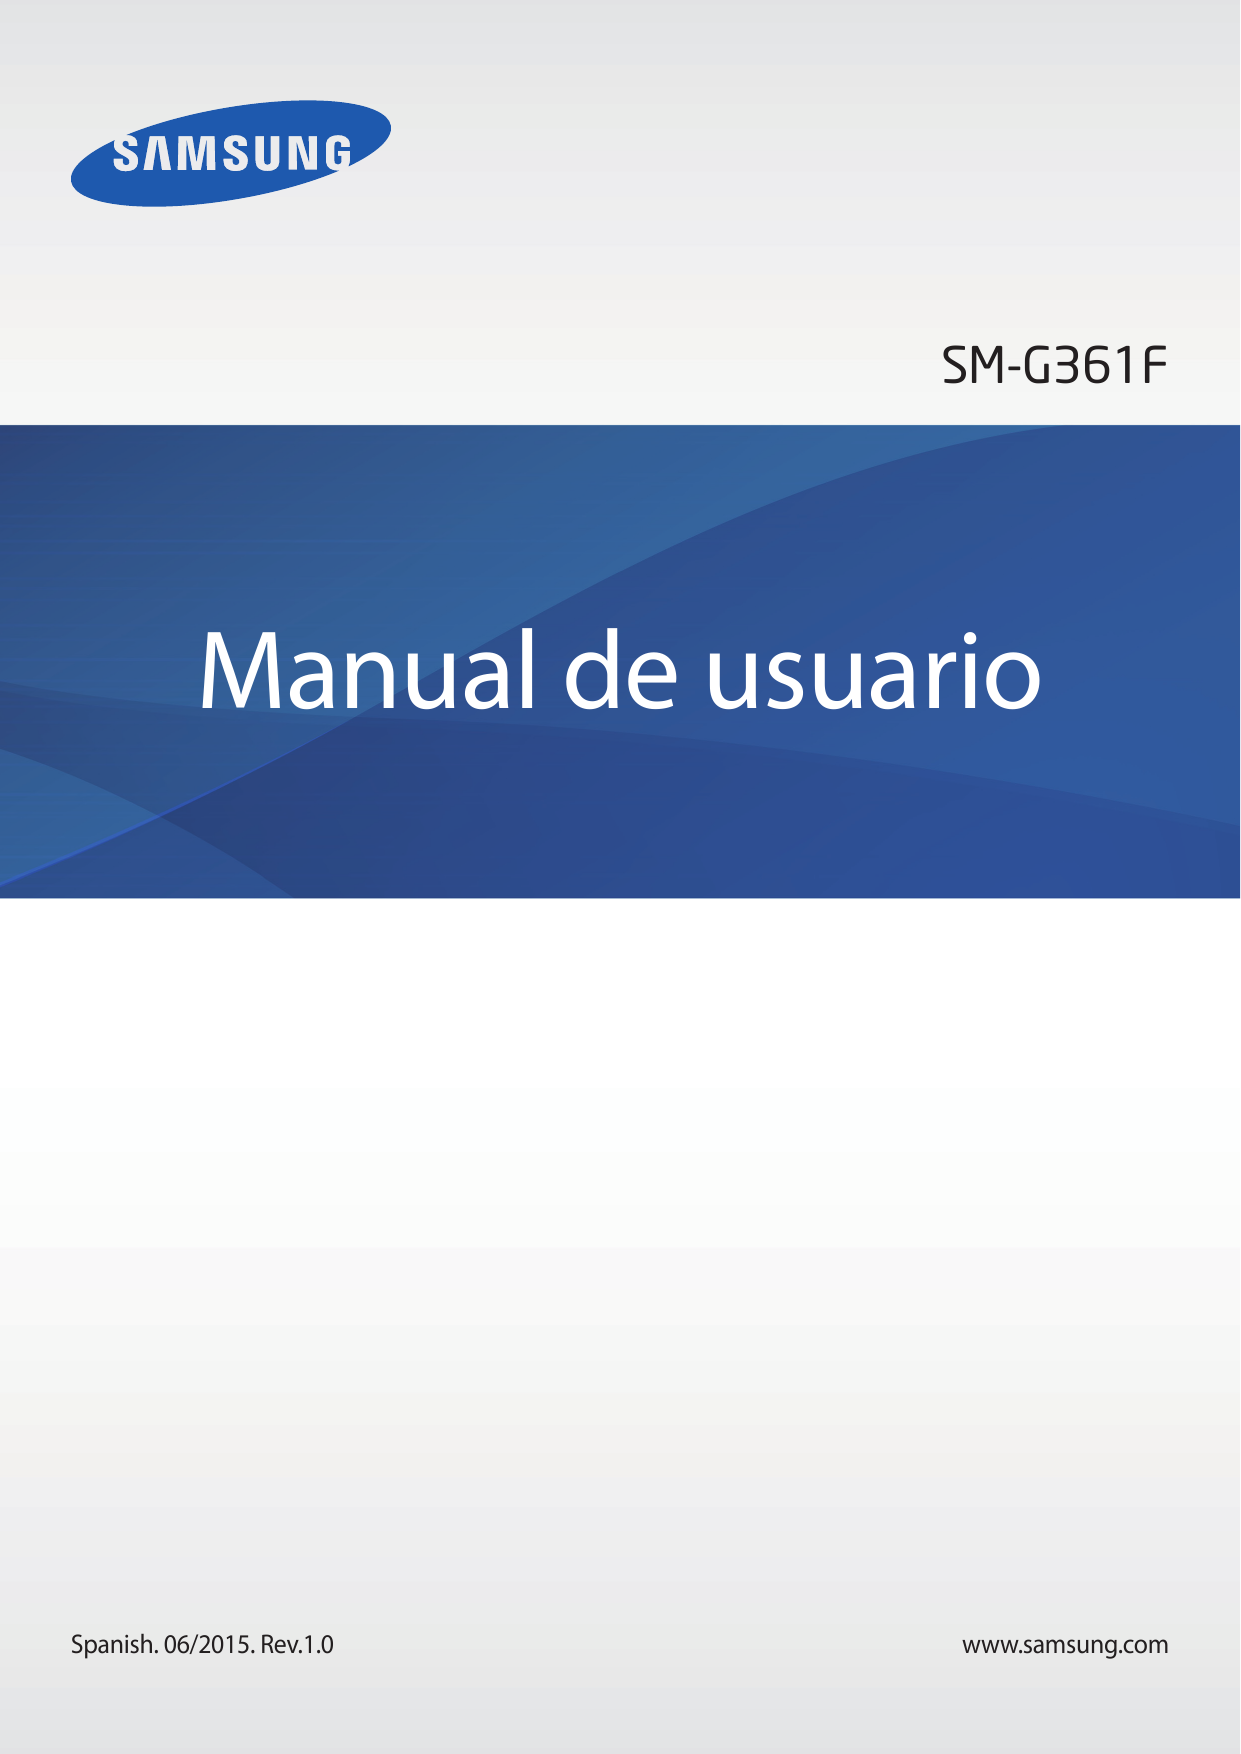 SM-G361FManual de usuarioSpanish. 06/2015. Rev.1.0www.samsung.com